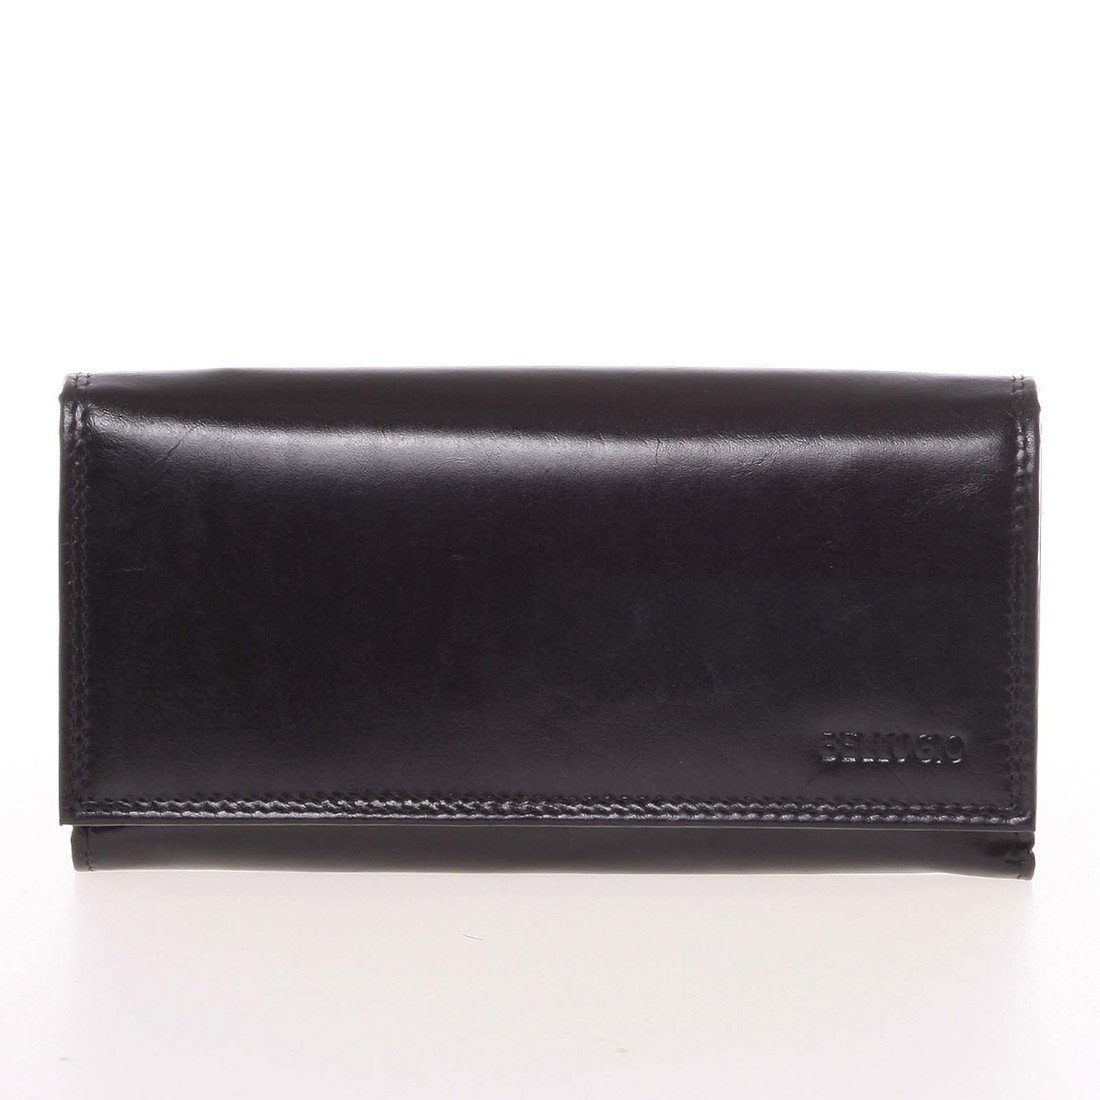 Velká dámská černá kožená peněženka - Bellugio Omega černá